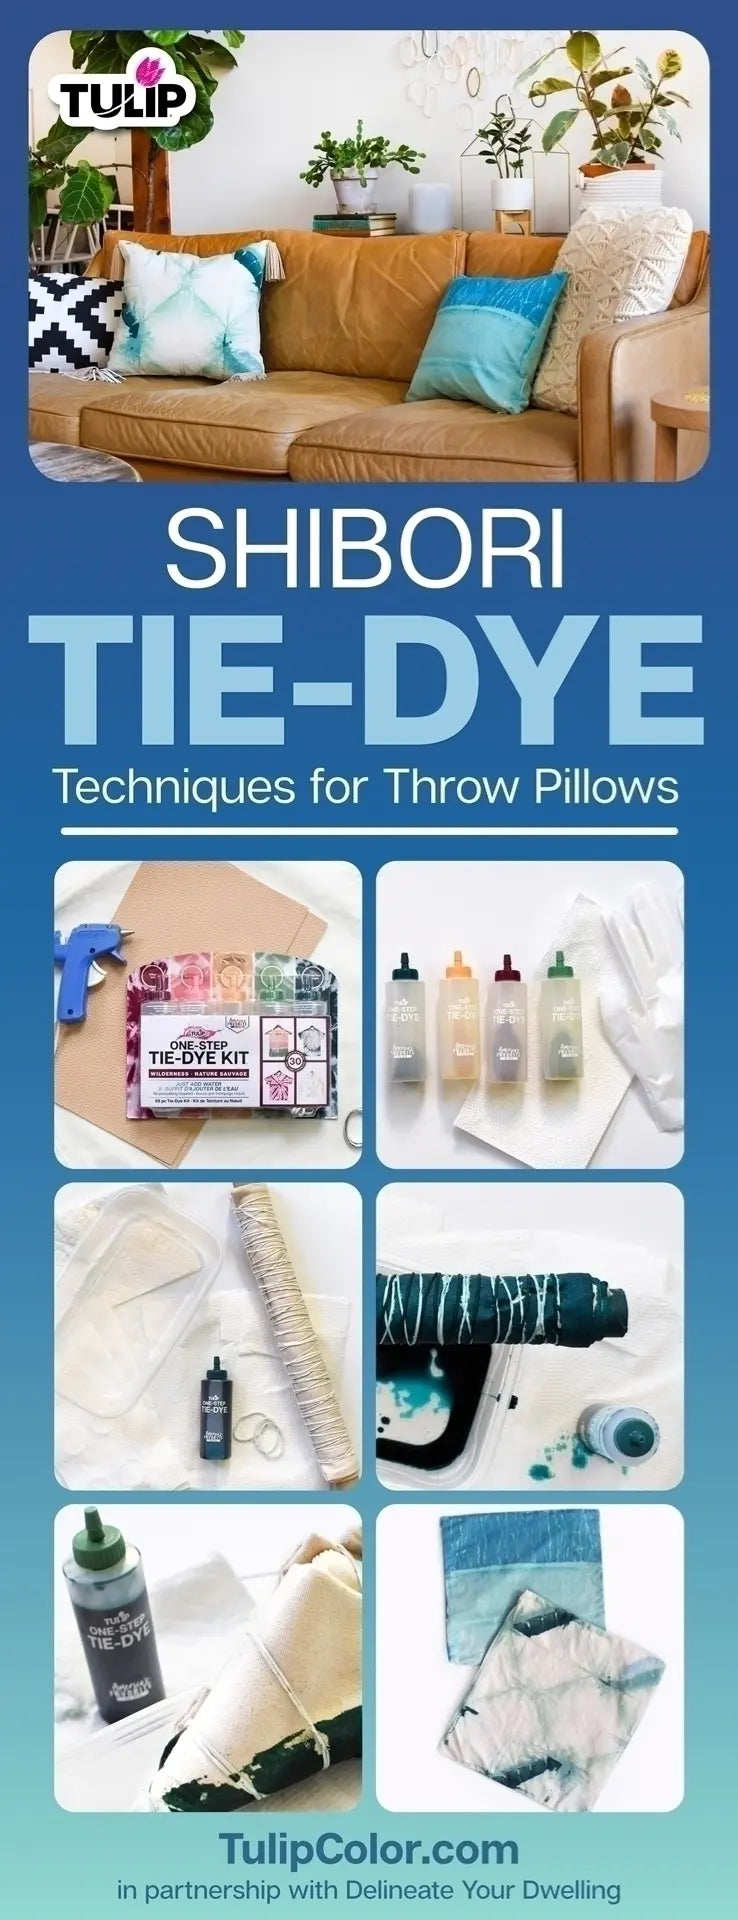 Shibori Tie-Dye Techniques for Throw Pillows